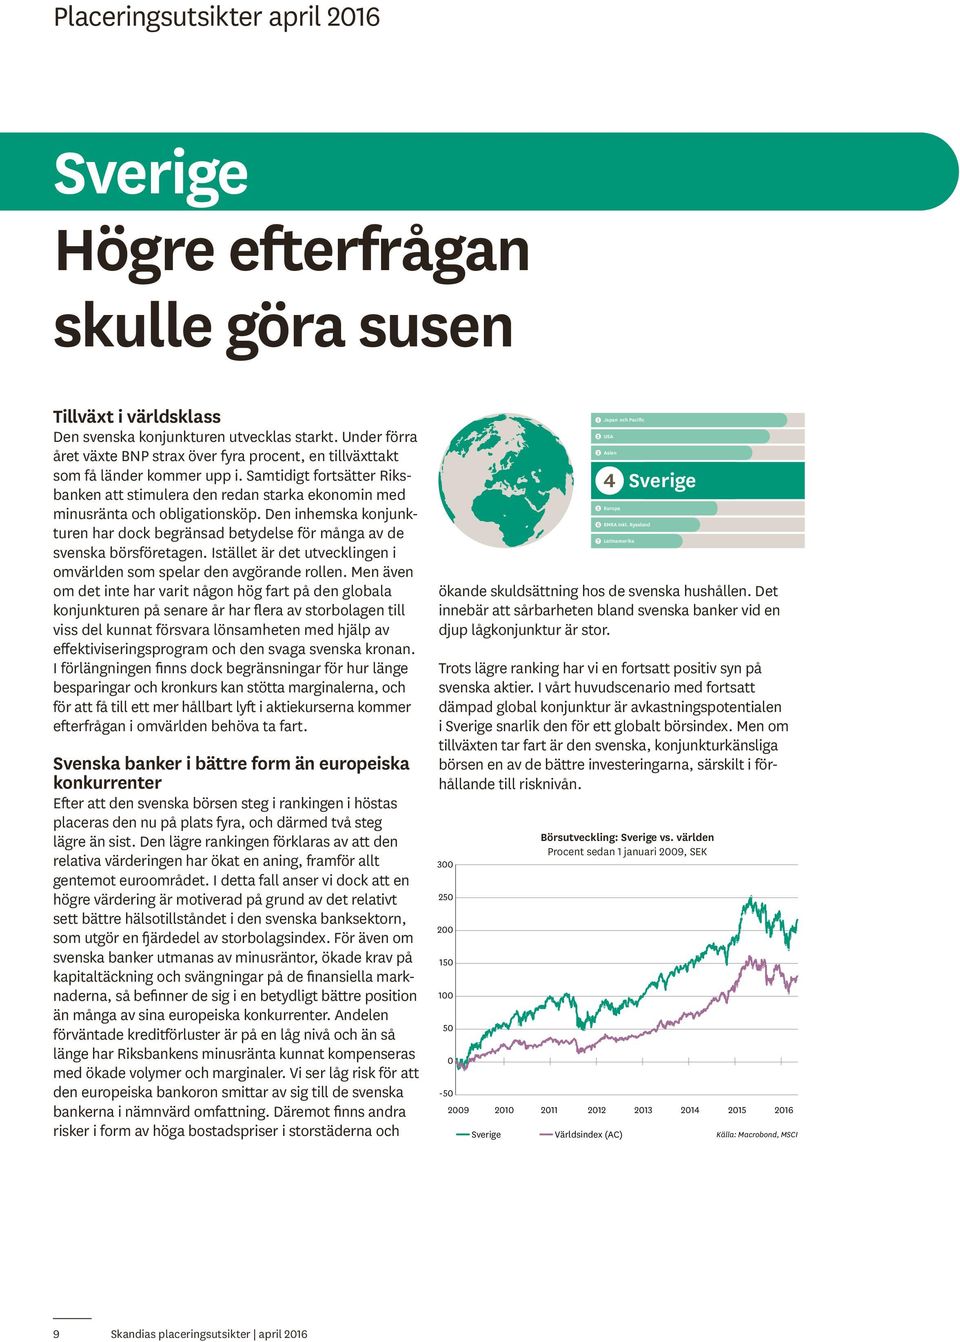 Samtidigt fortsätter Riksbanken att stimulera den redan starka ekonomin med minusränta och obligationsköp.